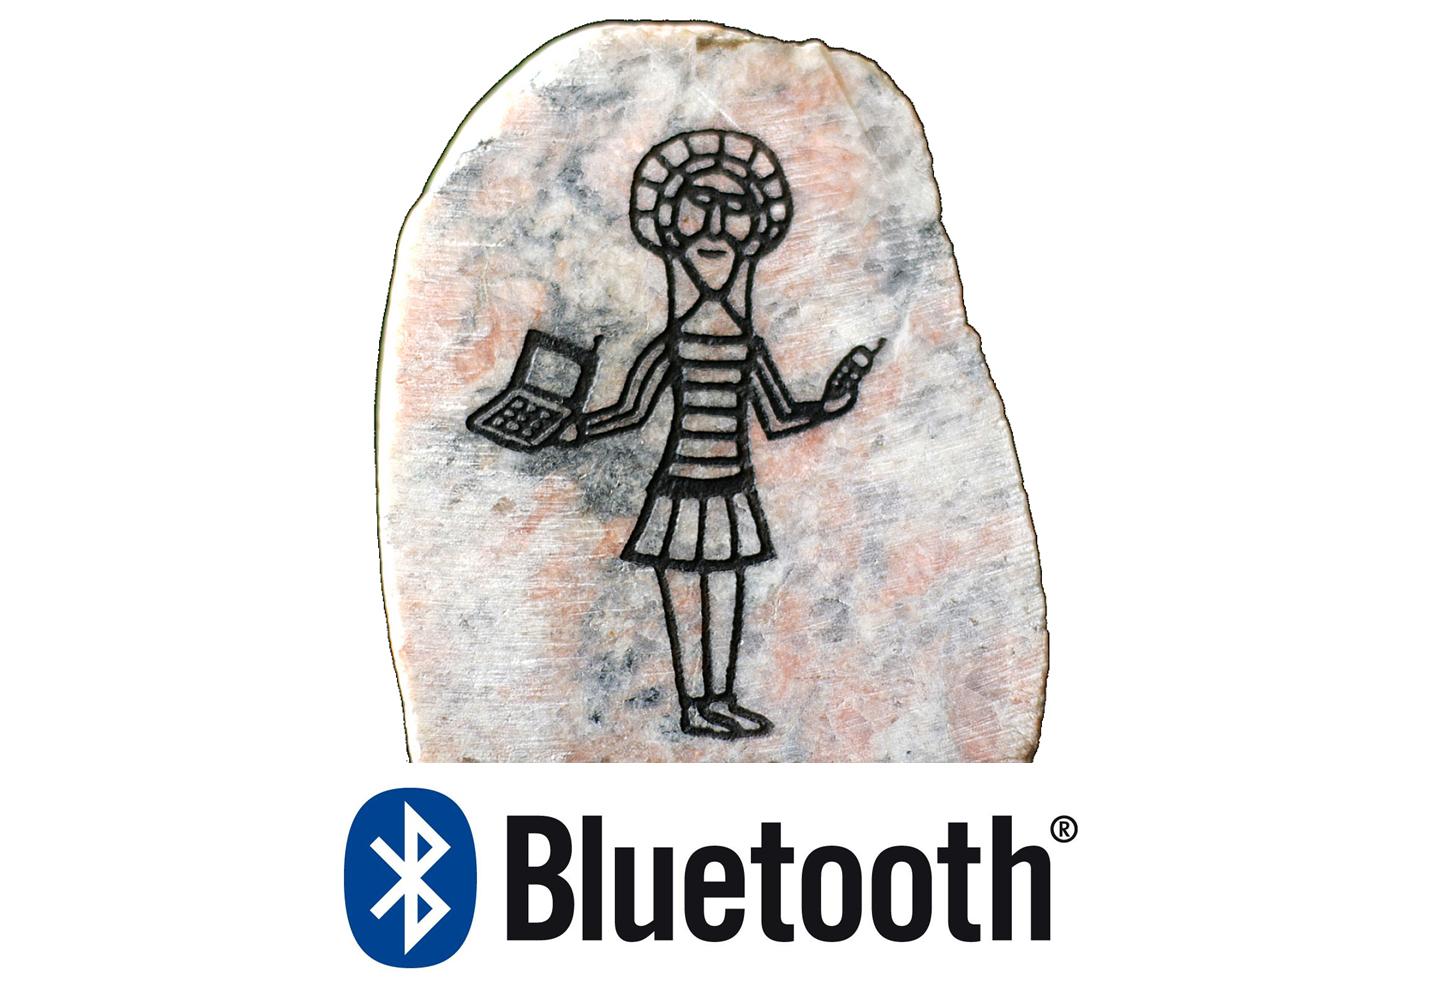 Danemark - Le nom et le logo runique du Bluetooth, inspirés de l'histoire du roi Harad Ier - Photo: Via Ritzau